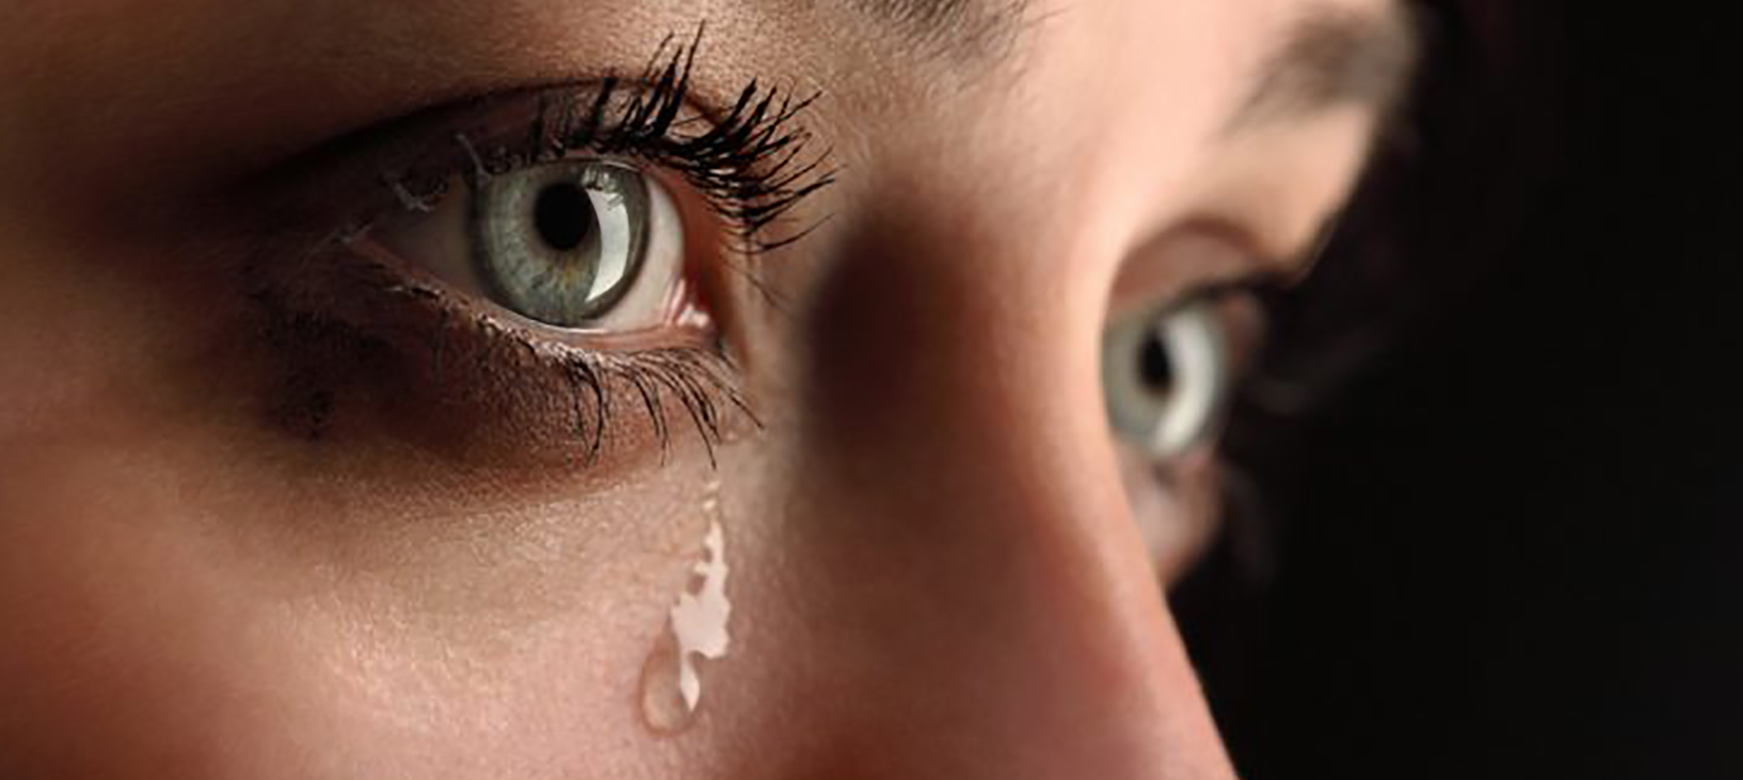 Una lágrima podría diagnosticar precozmente el párkinson...